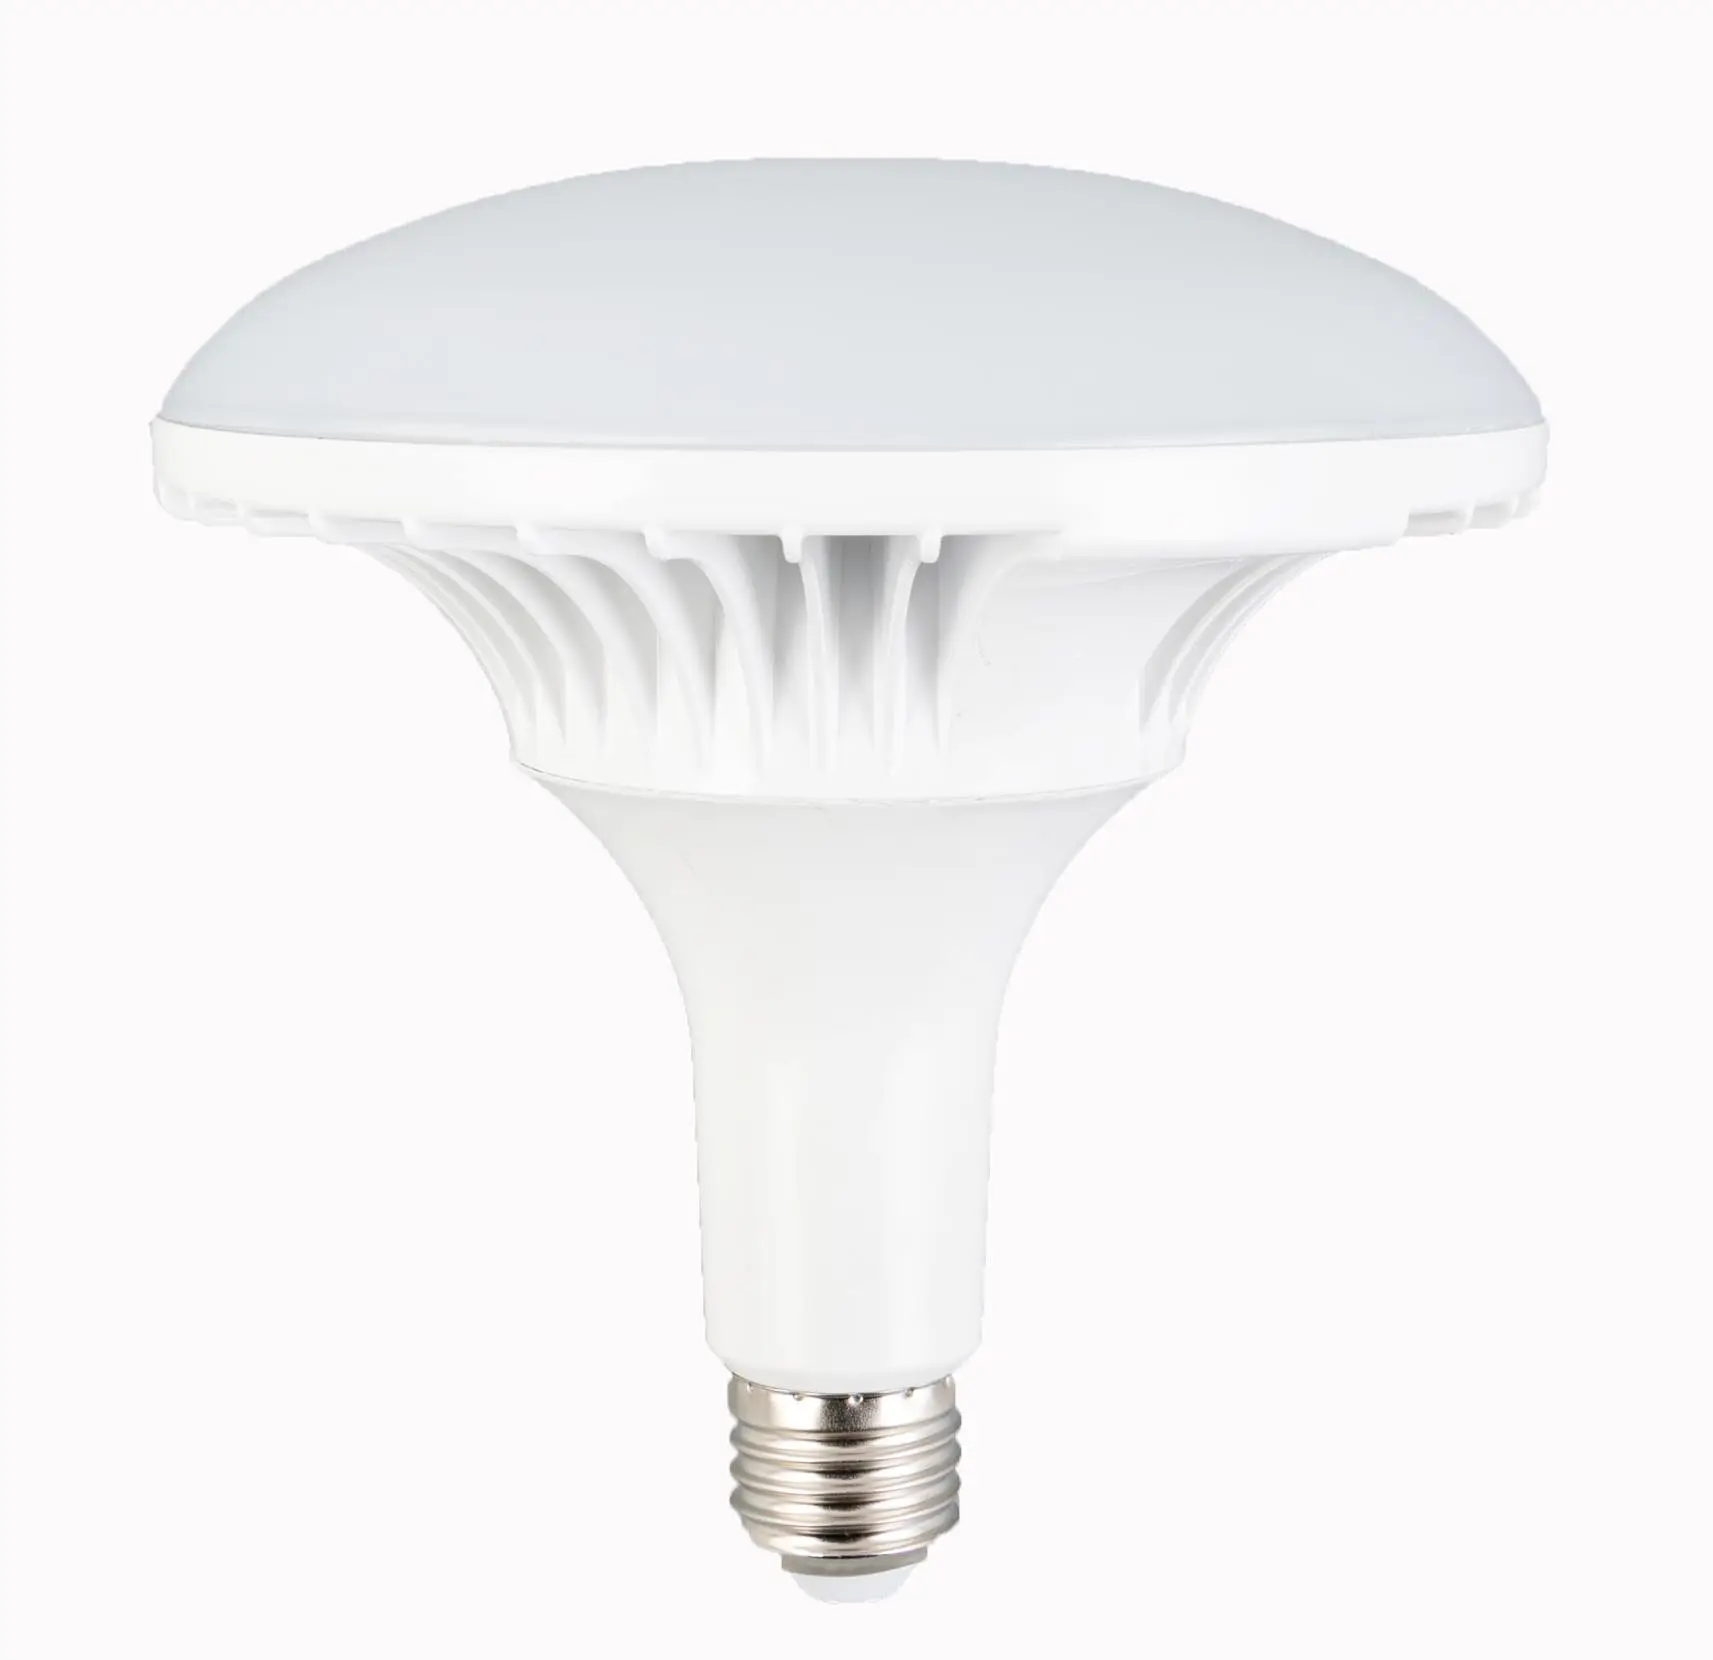 UFO Bulb E27 Base High Brightness Hight Power Die Casting Aluminum Lamp Led Mushroom Light